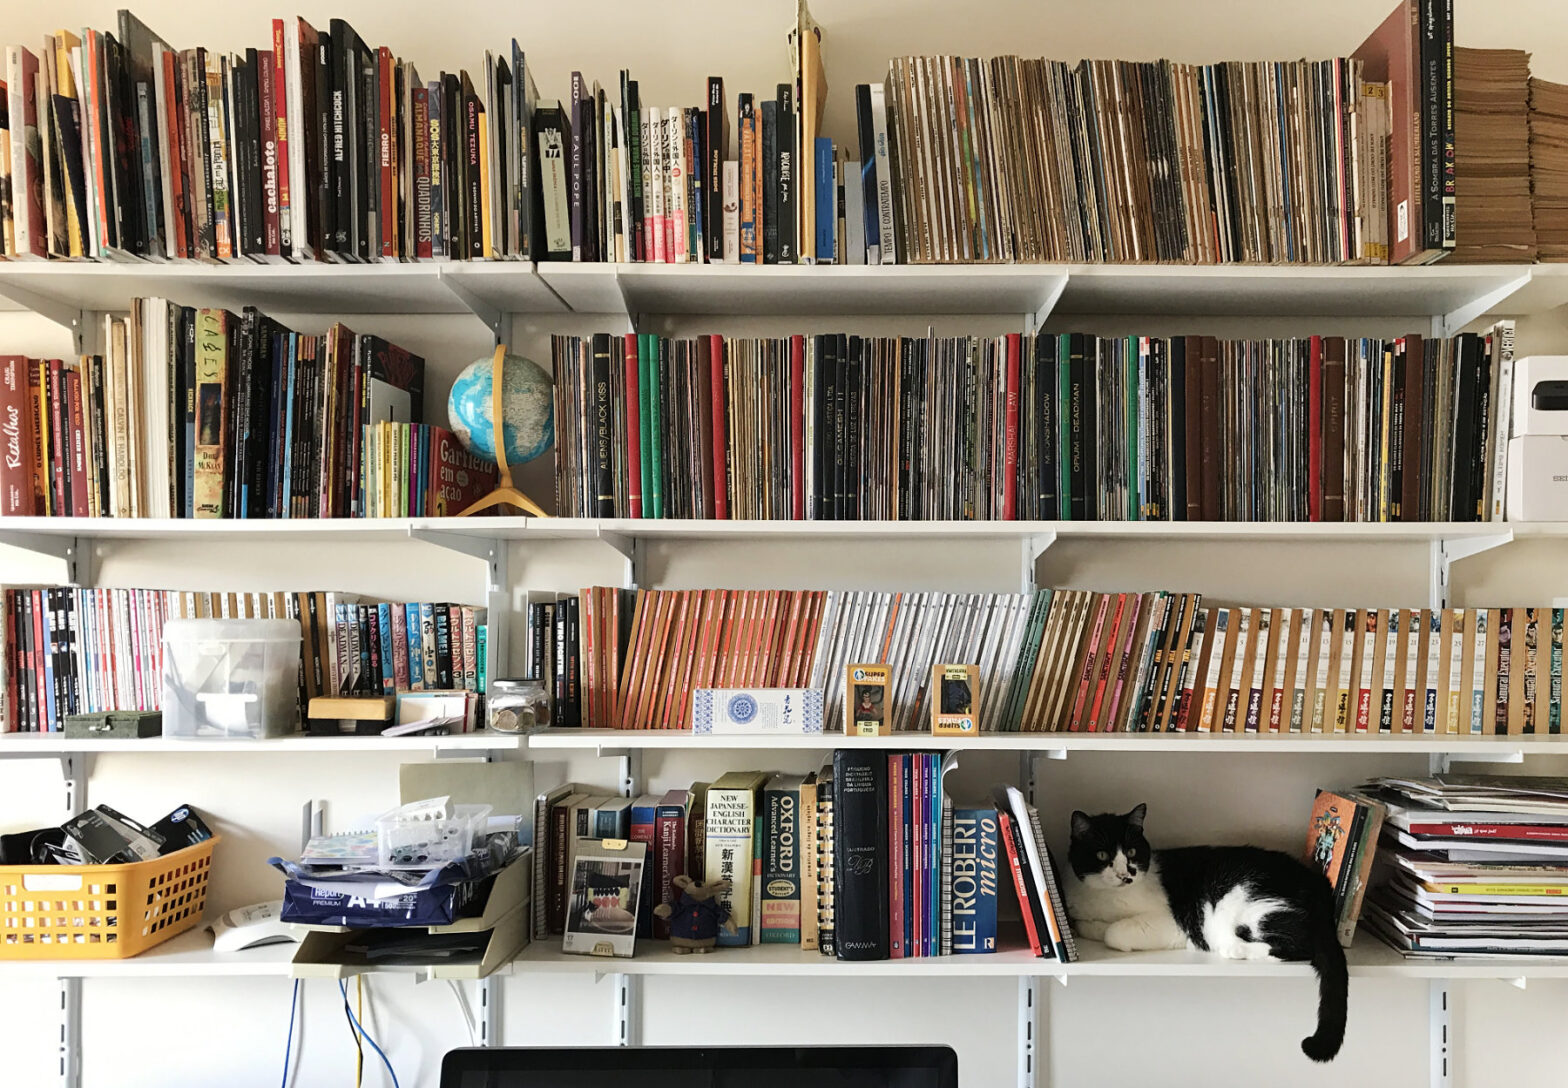 Foto de quatro níveis de uma estante cheia de quadrinhos com uma gata preto e branca na estante inferior, à direita